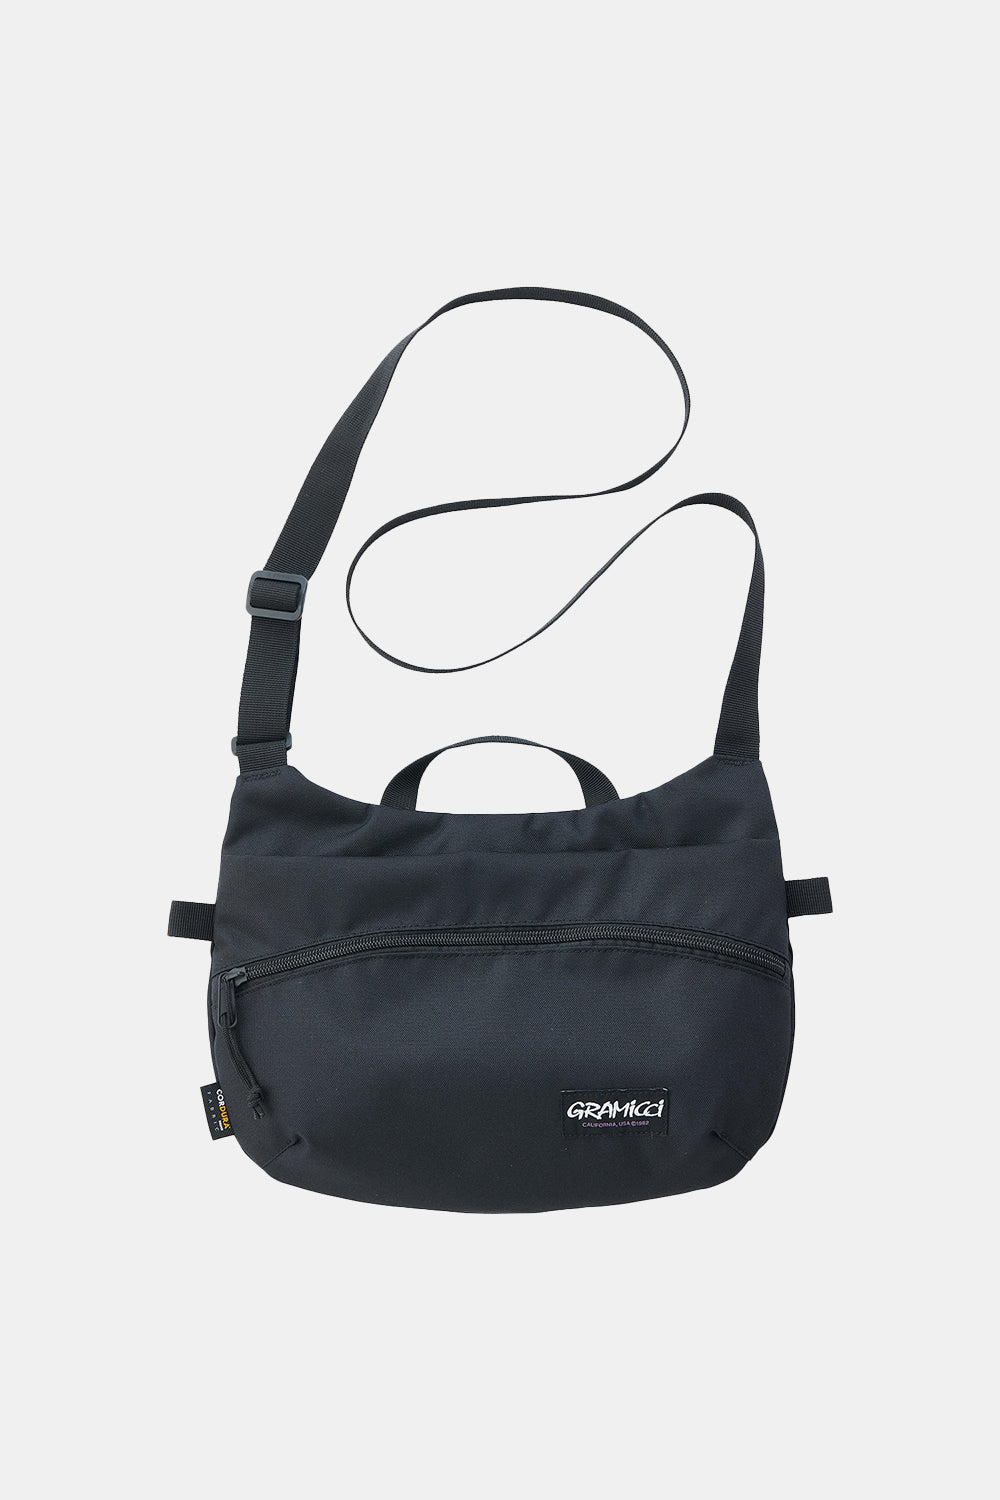 Gramicci Cordura Shoulder Bag (Black)